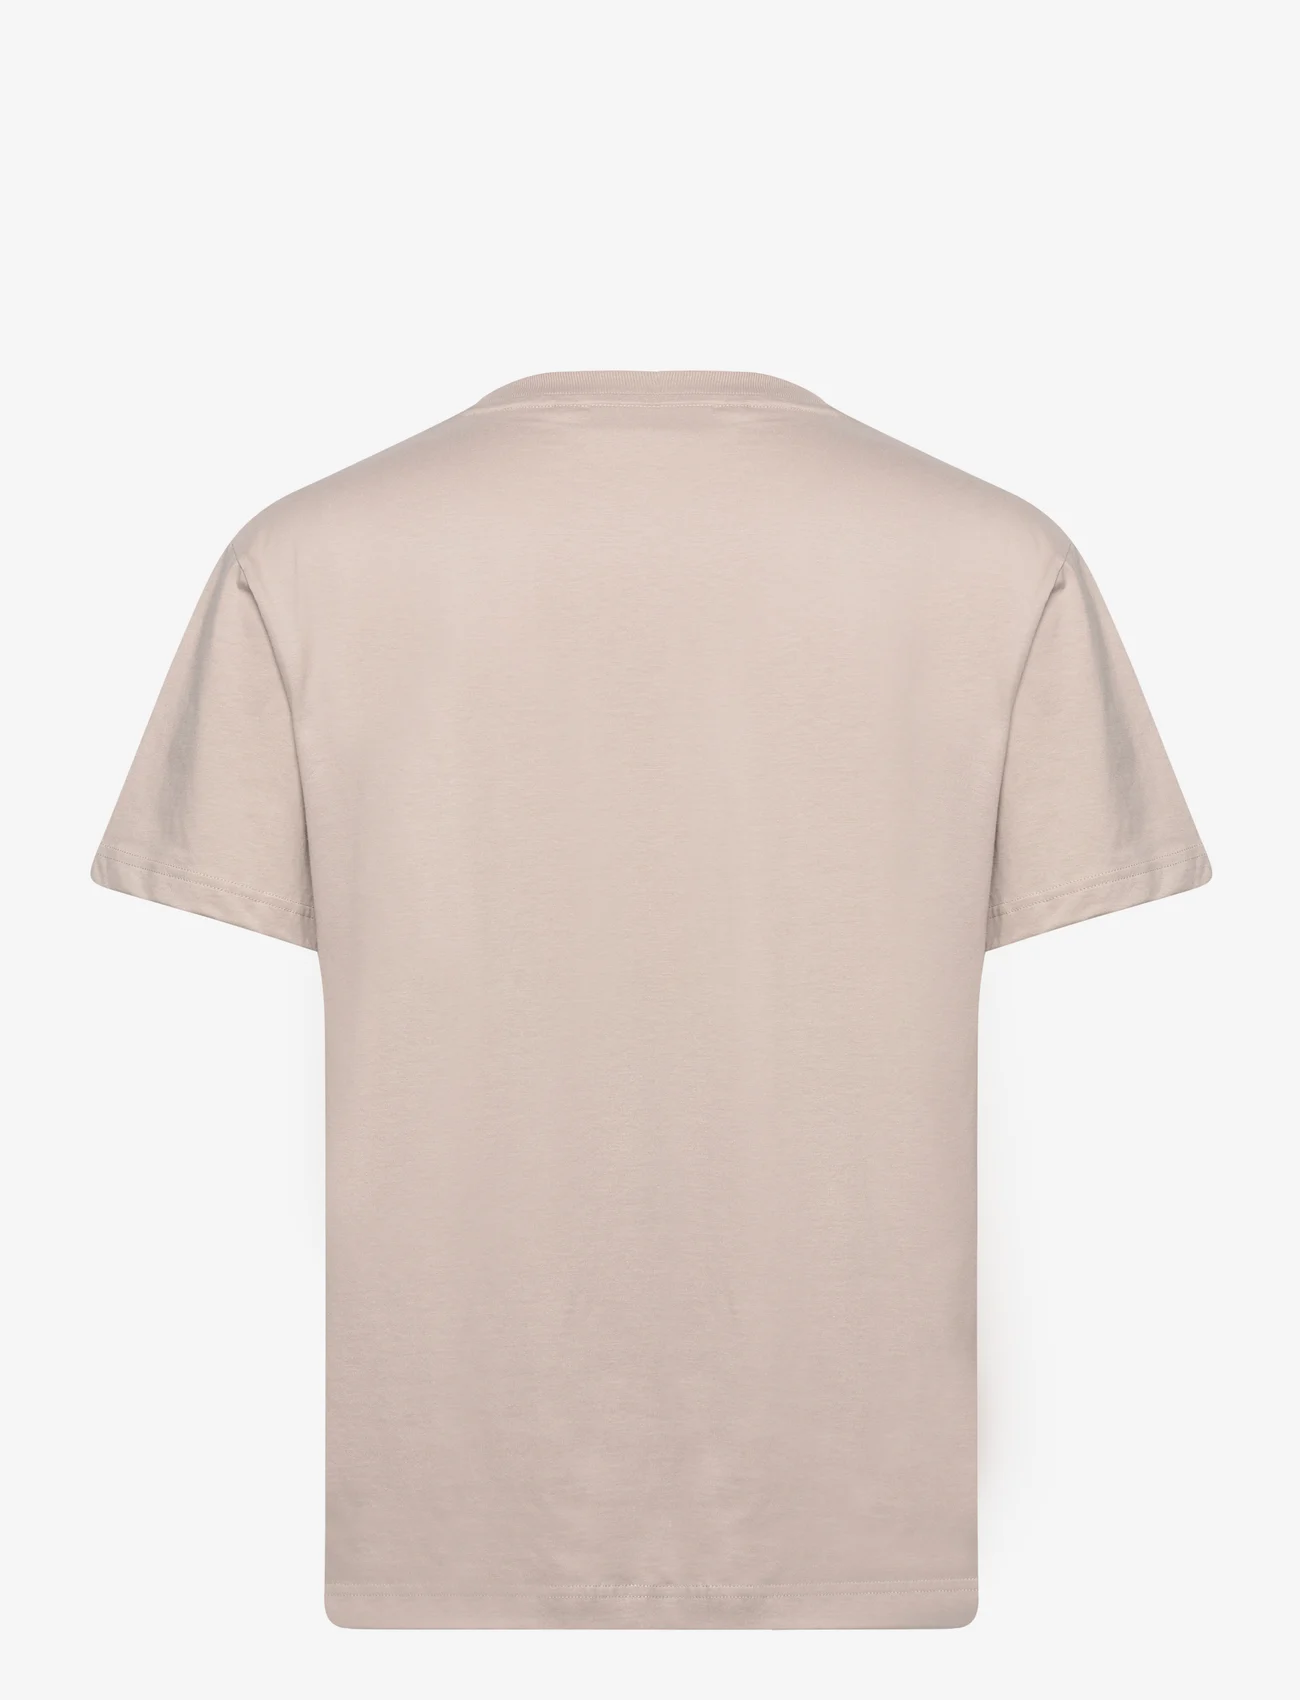 Calvin Klein - HERO LOGO COMFORT T-SHIRT - basic t-shirts - atmosphere - 1